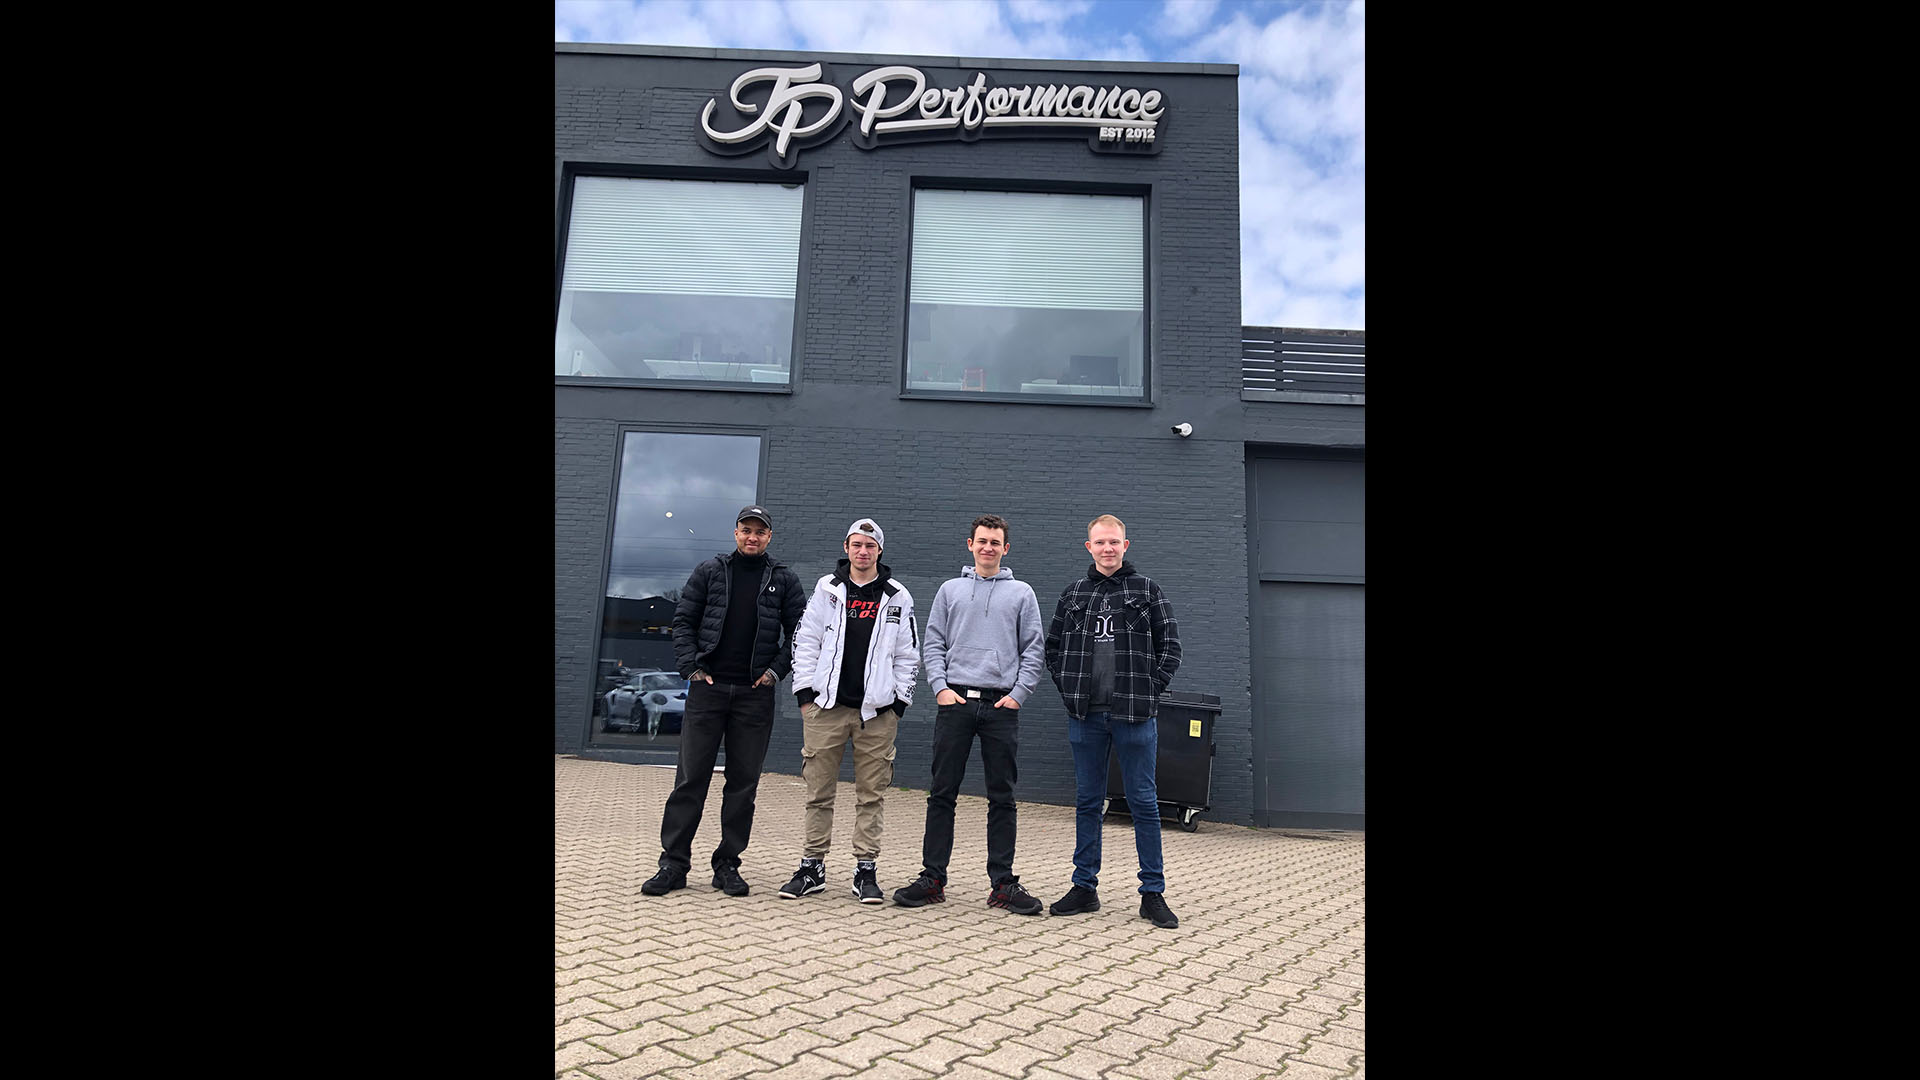 RWB Essen - RWB-Azubis besuchen die Tuning-Firma "JP Performance"